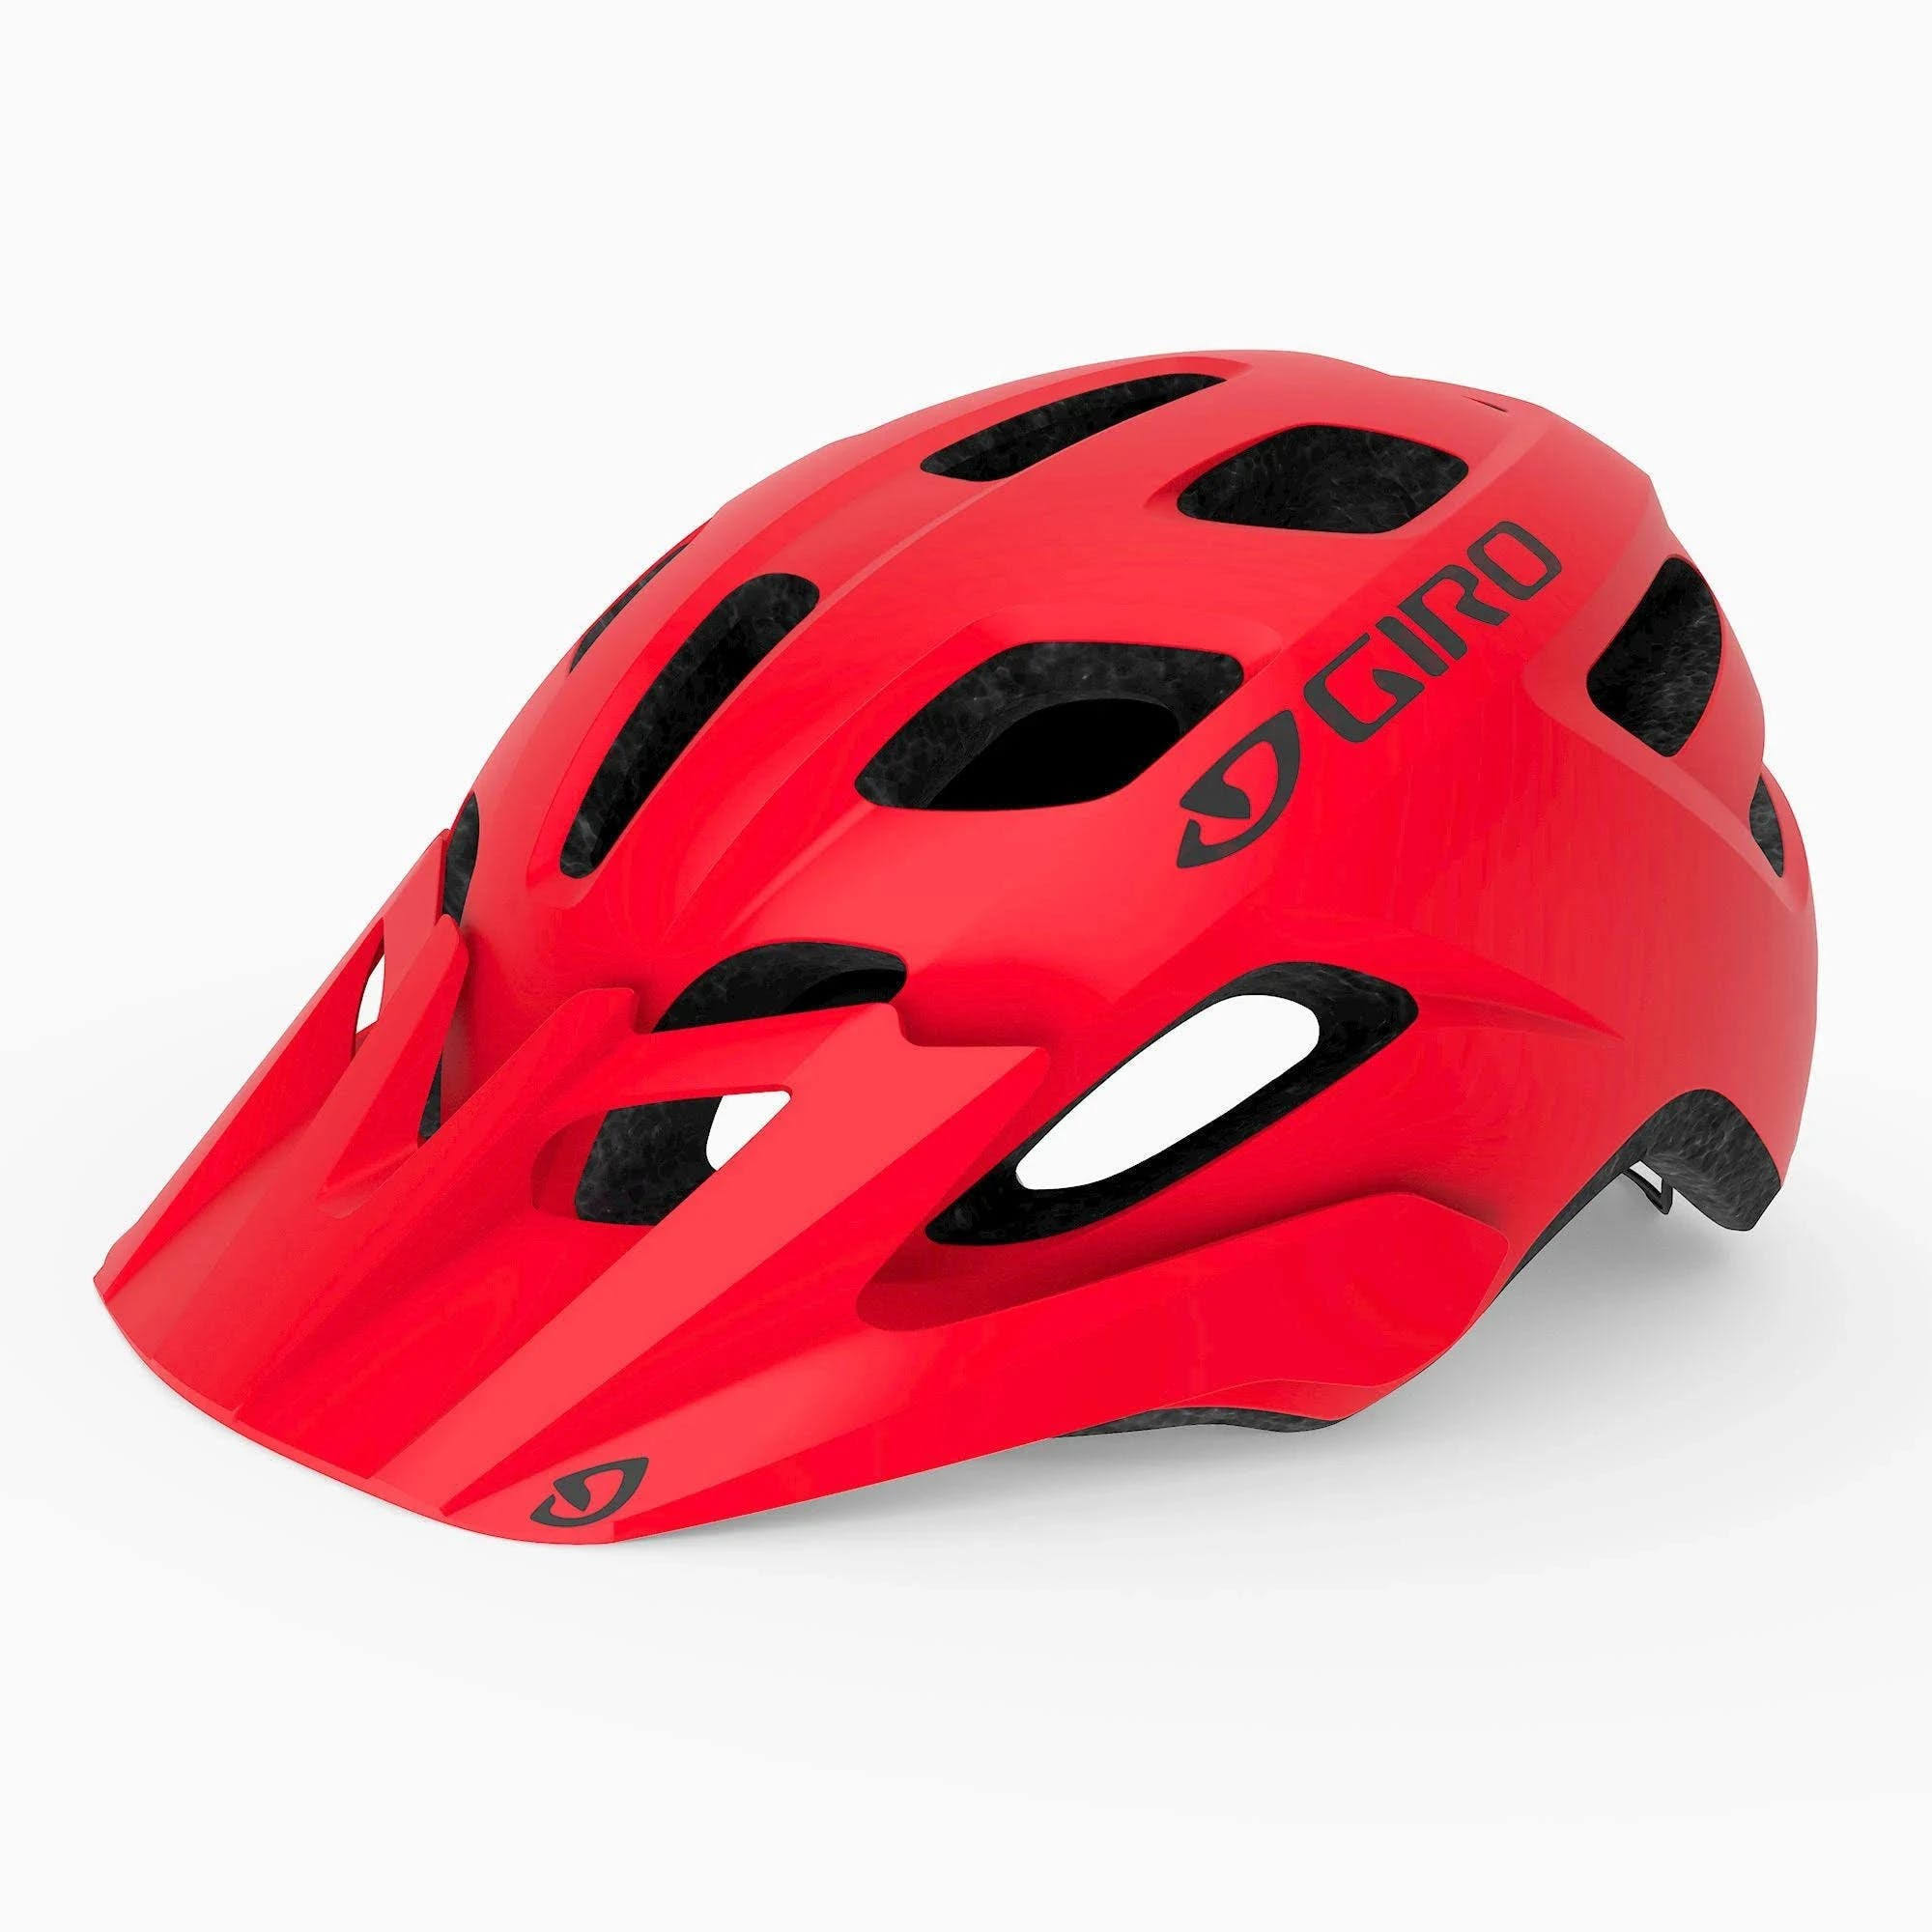 Giro Tremor MIPS helmet